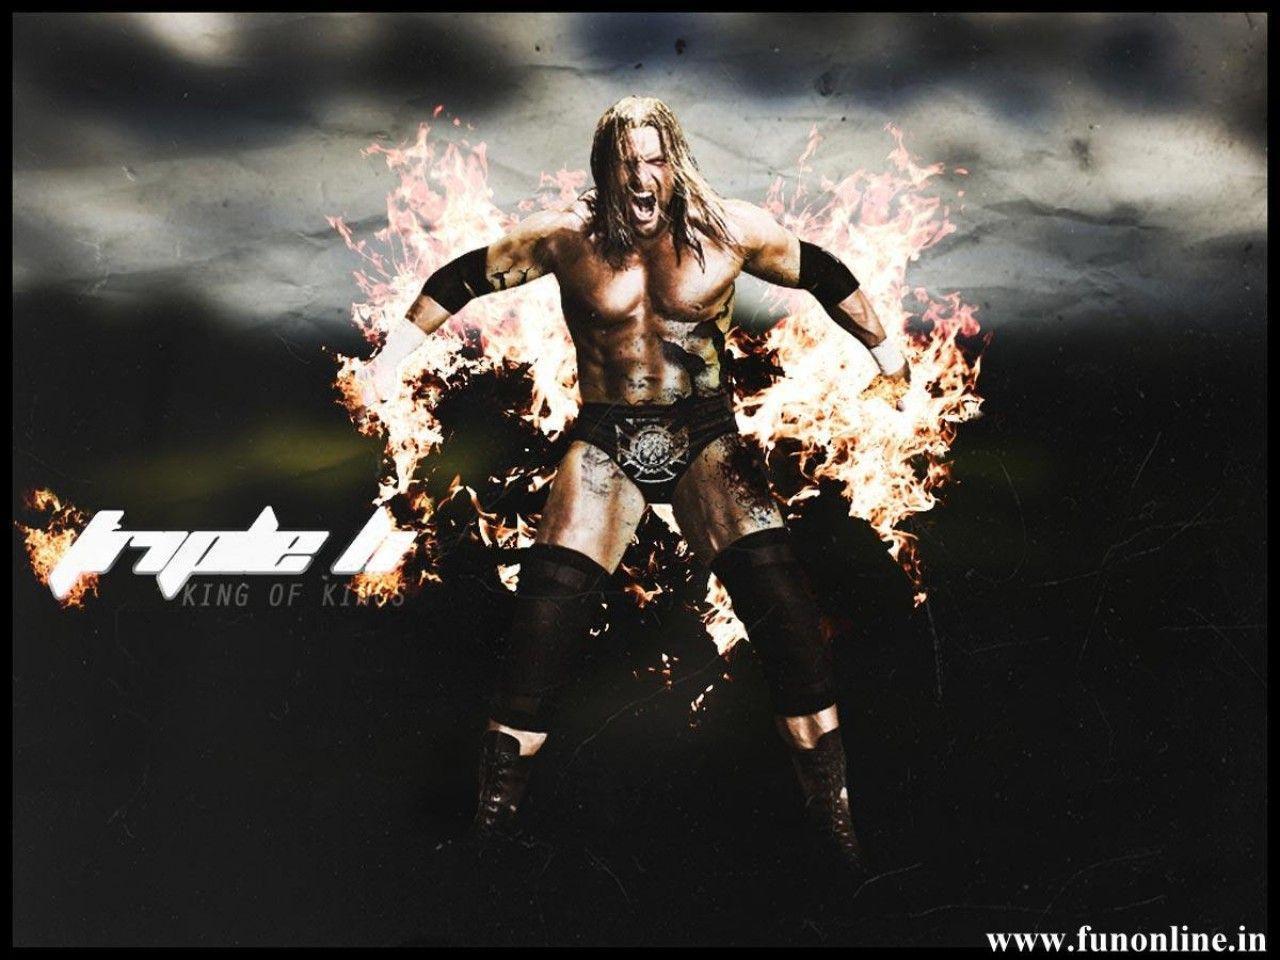 Triple H Wallpaper, Download WWE Champion Triple H HD Wallpaper Free